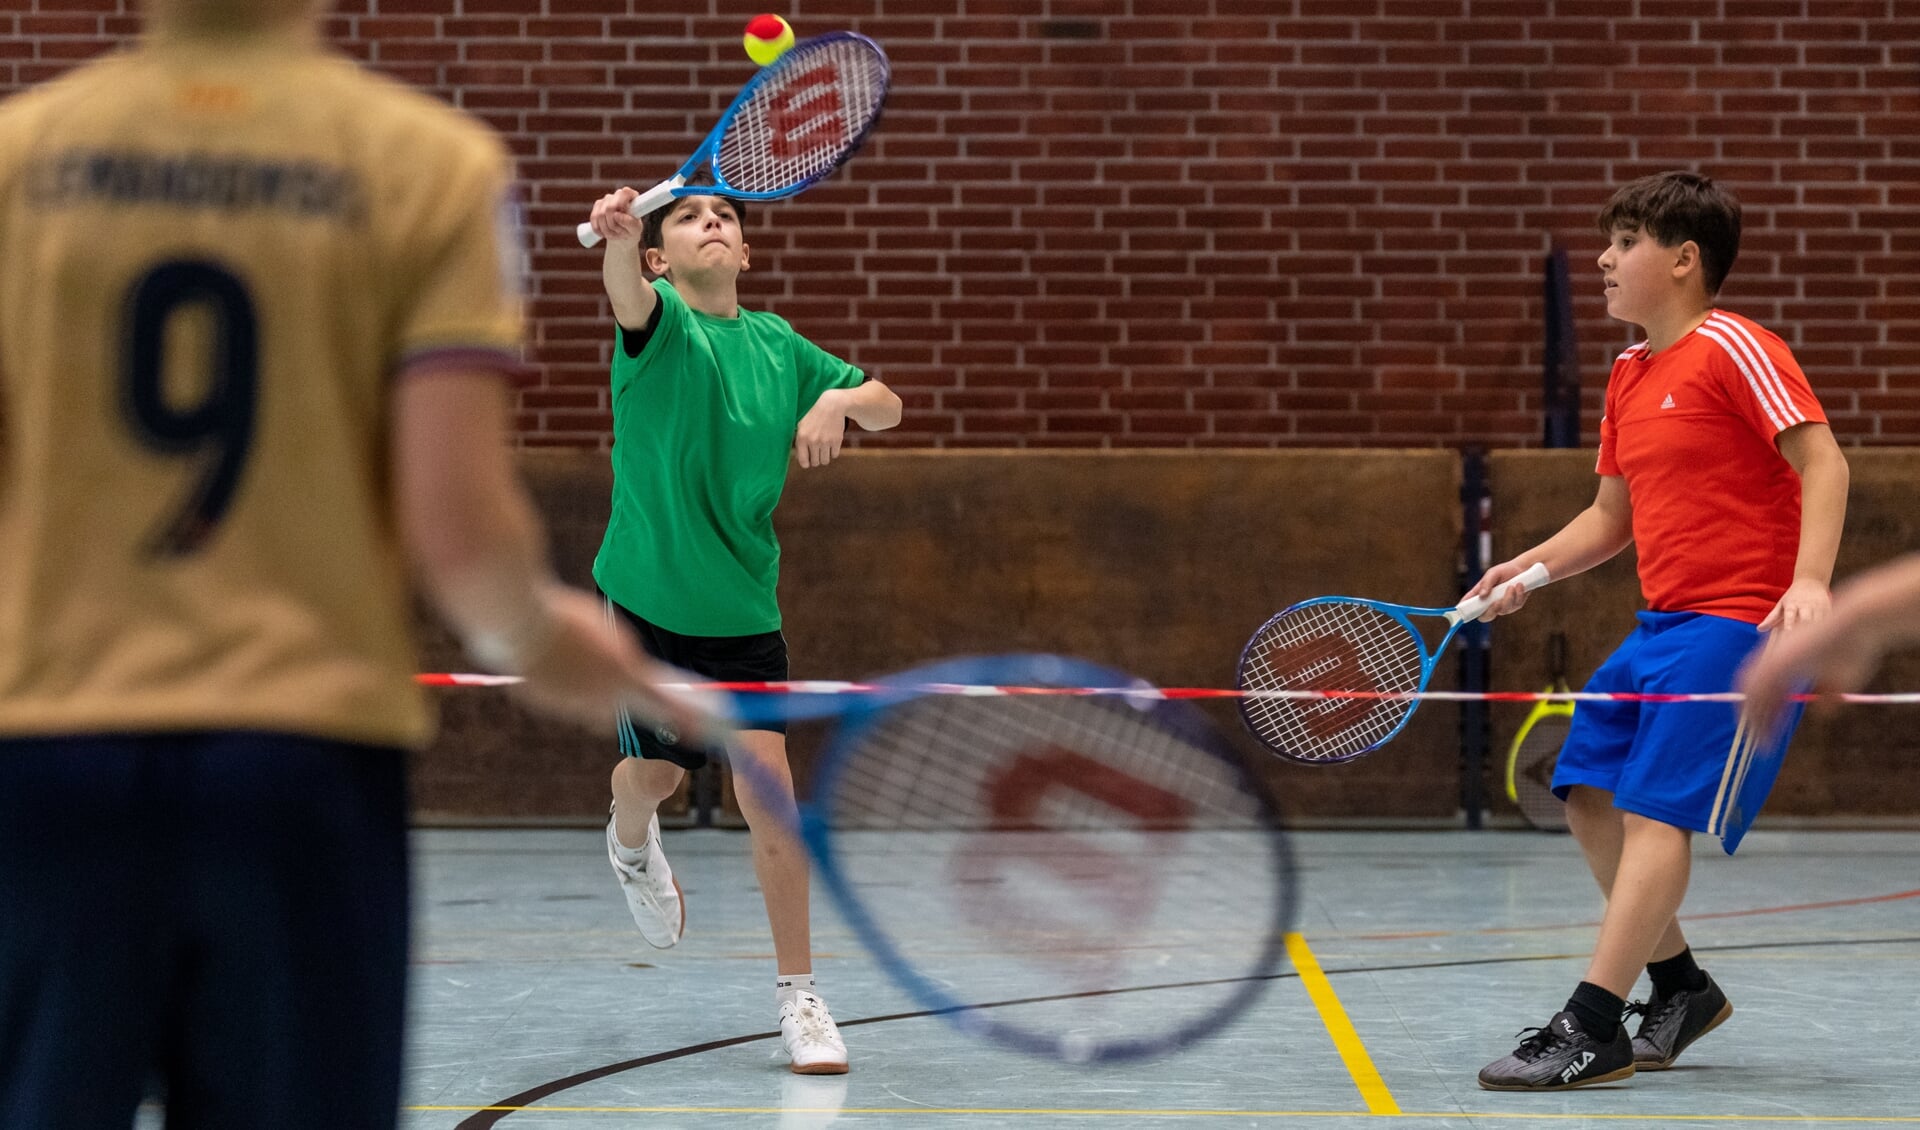 Elever fra tre grundskoler svingede tirsdag formiddag ketsjeren, da der var stor tennisfest i Idrætshallen. Foto: